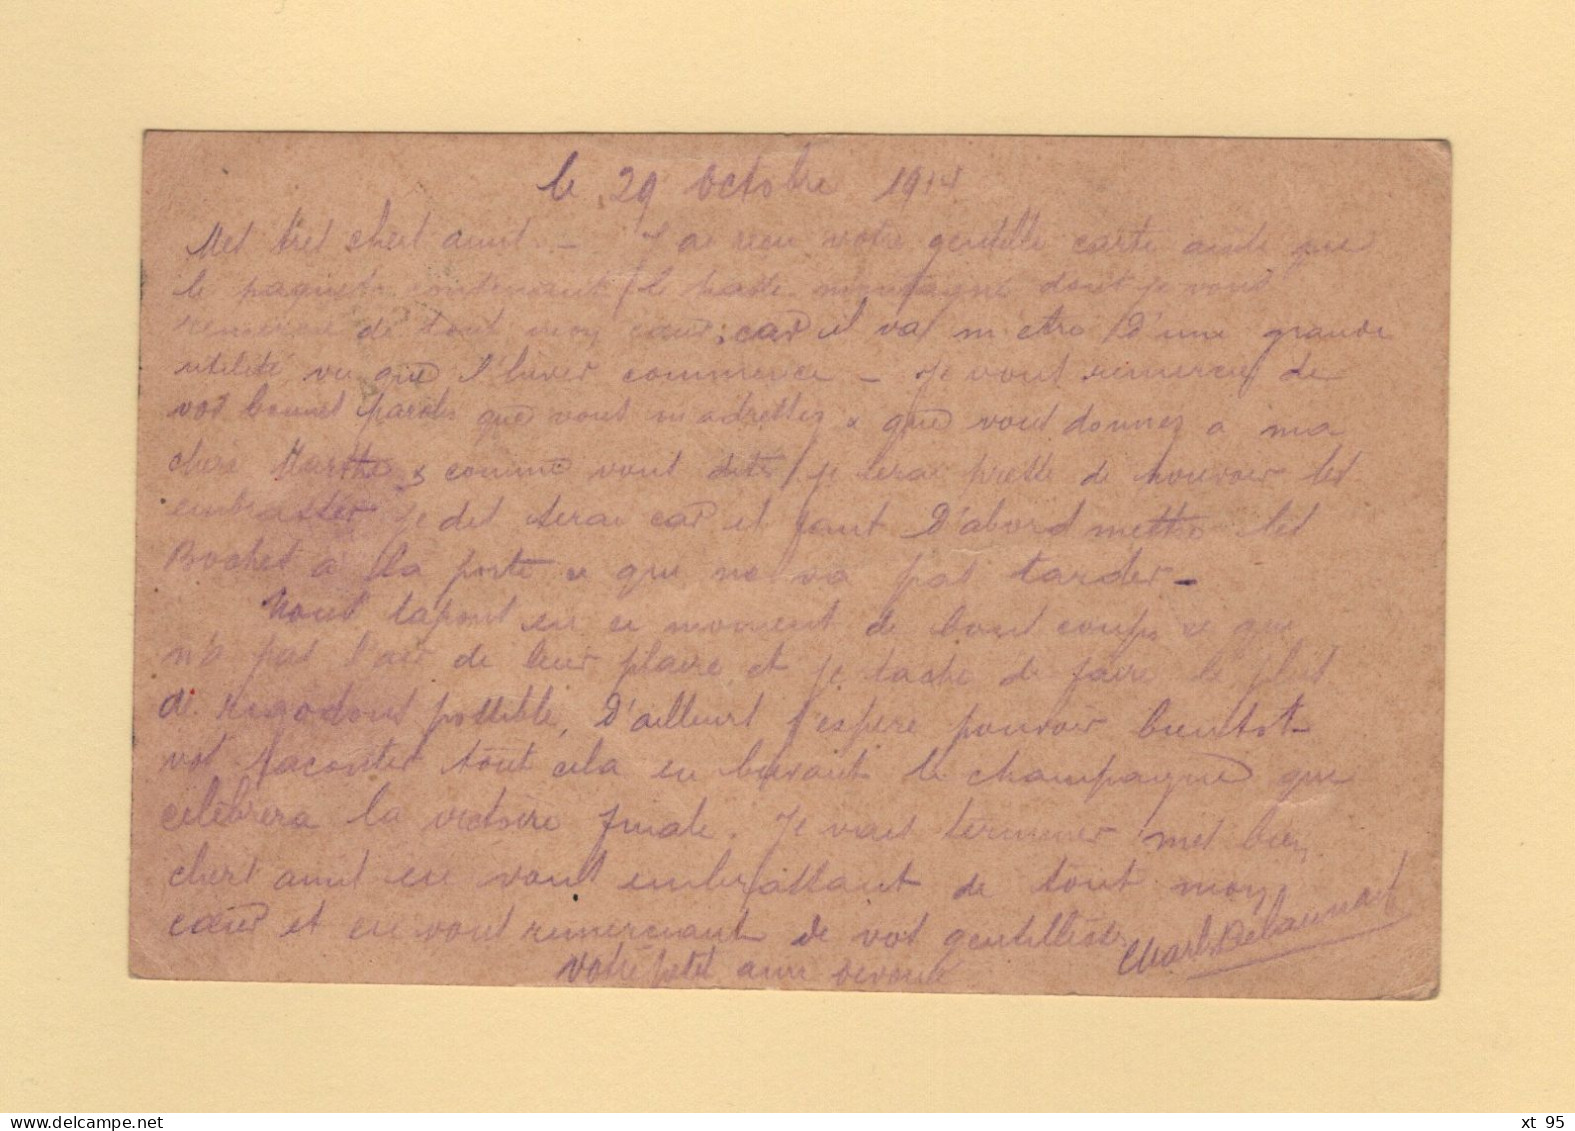 Carte Postale Militaire - Troupes En Campagne - 1914 - Guerra Del 1914-18